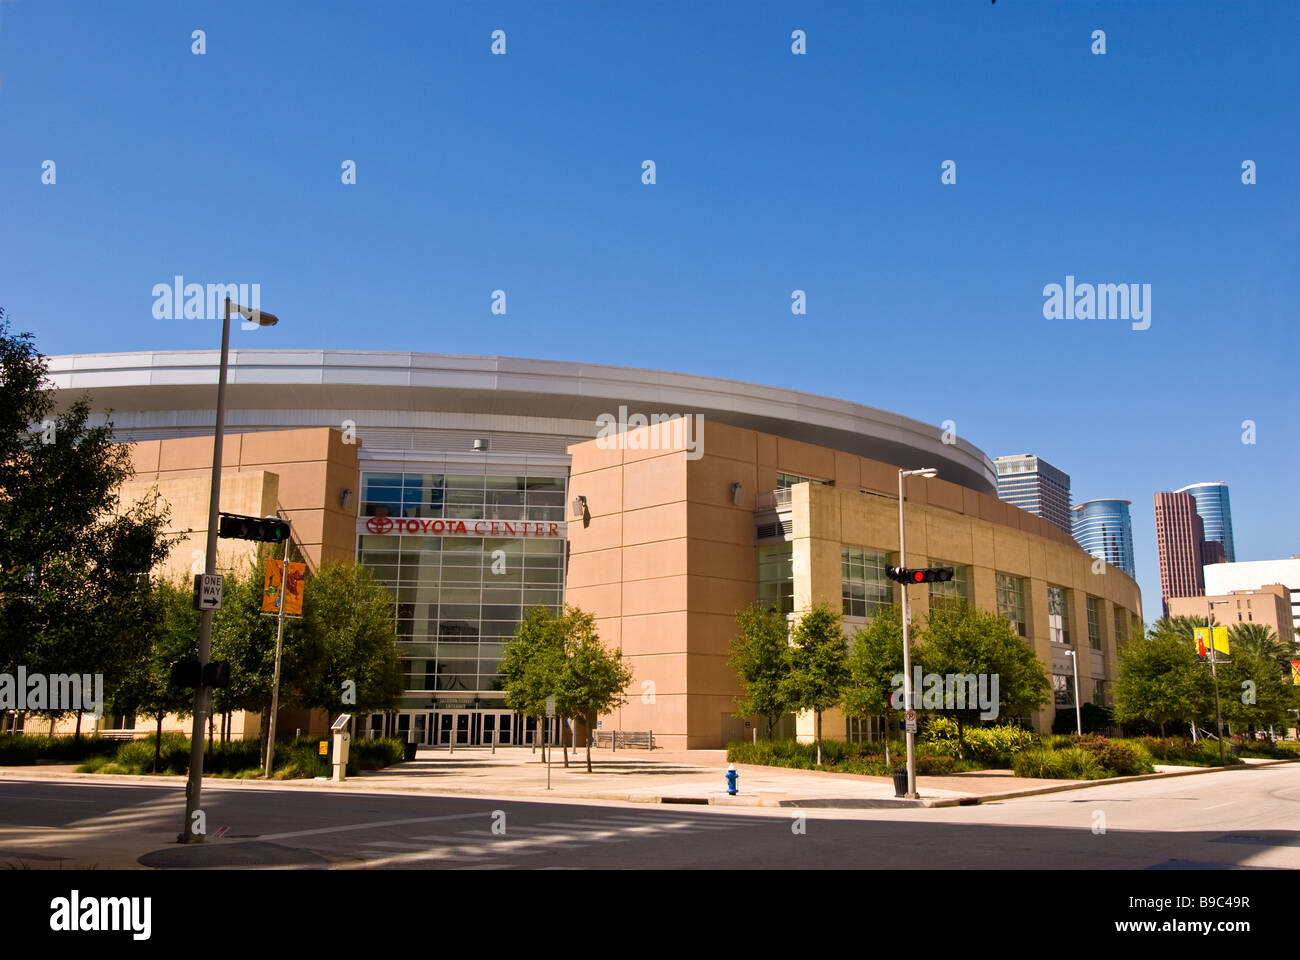 El Toyota Center de Houston Texas exterior sports arena NBA Houston Rockets AHL Houston Aeros edificio circular architectre Foto de stock